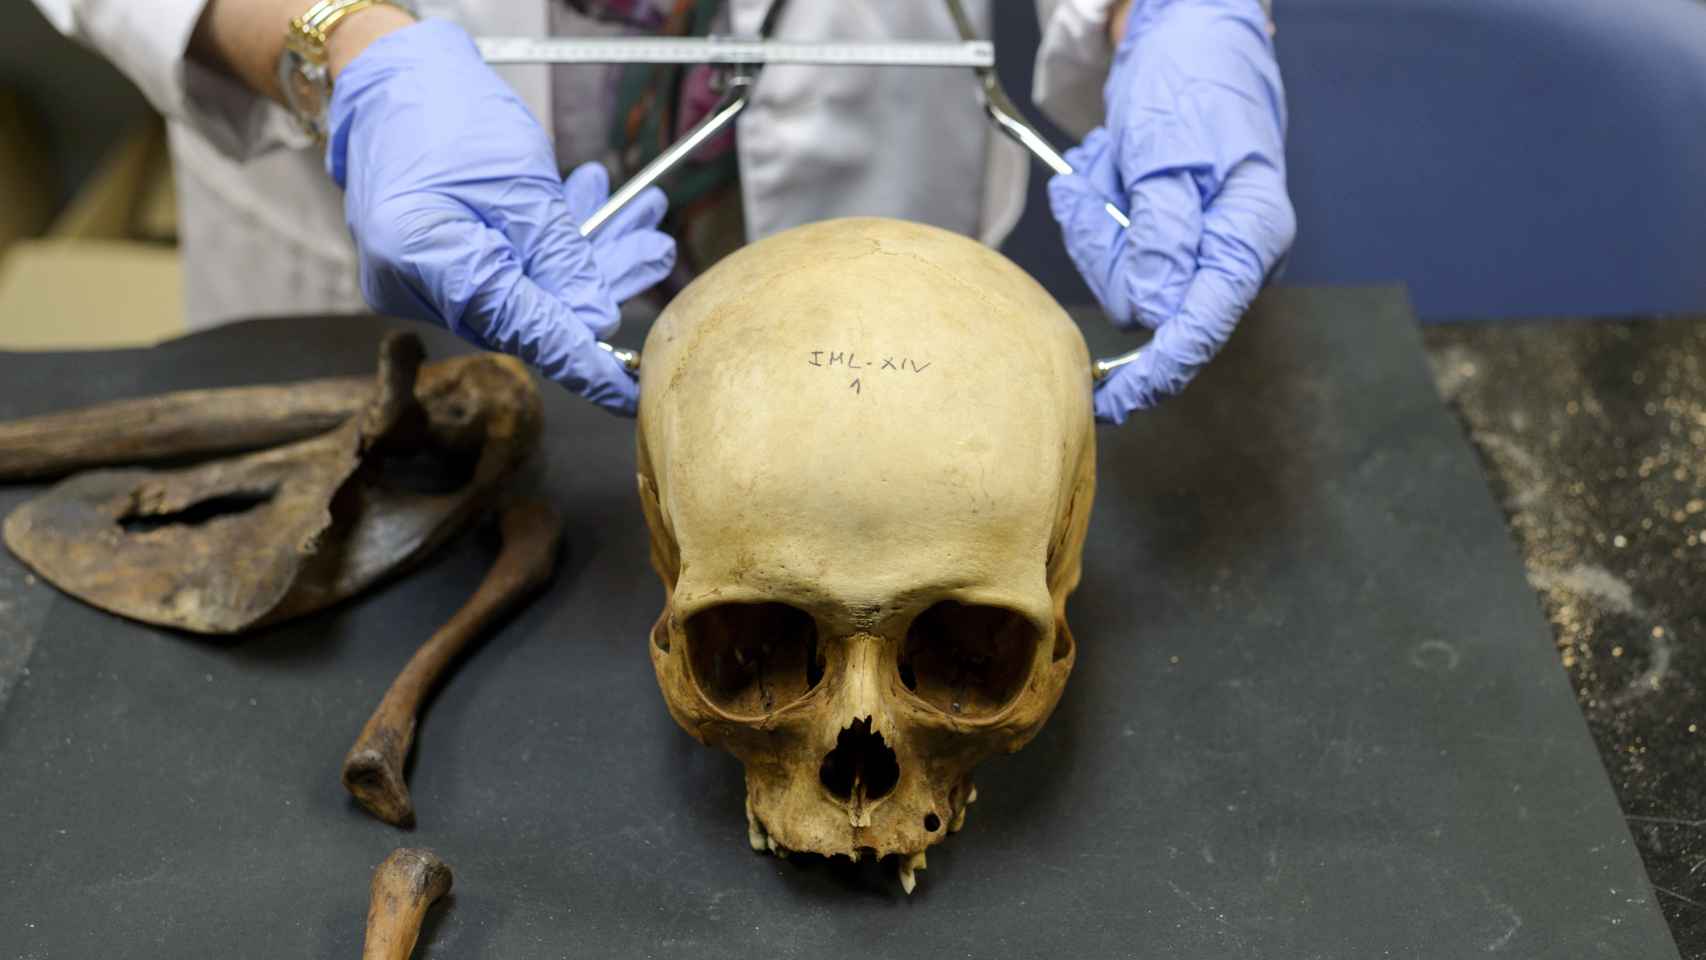 Los forenses estudian el cráneo del cadáver para averiguar datos sobre la persona fallecida como la raza.